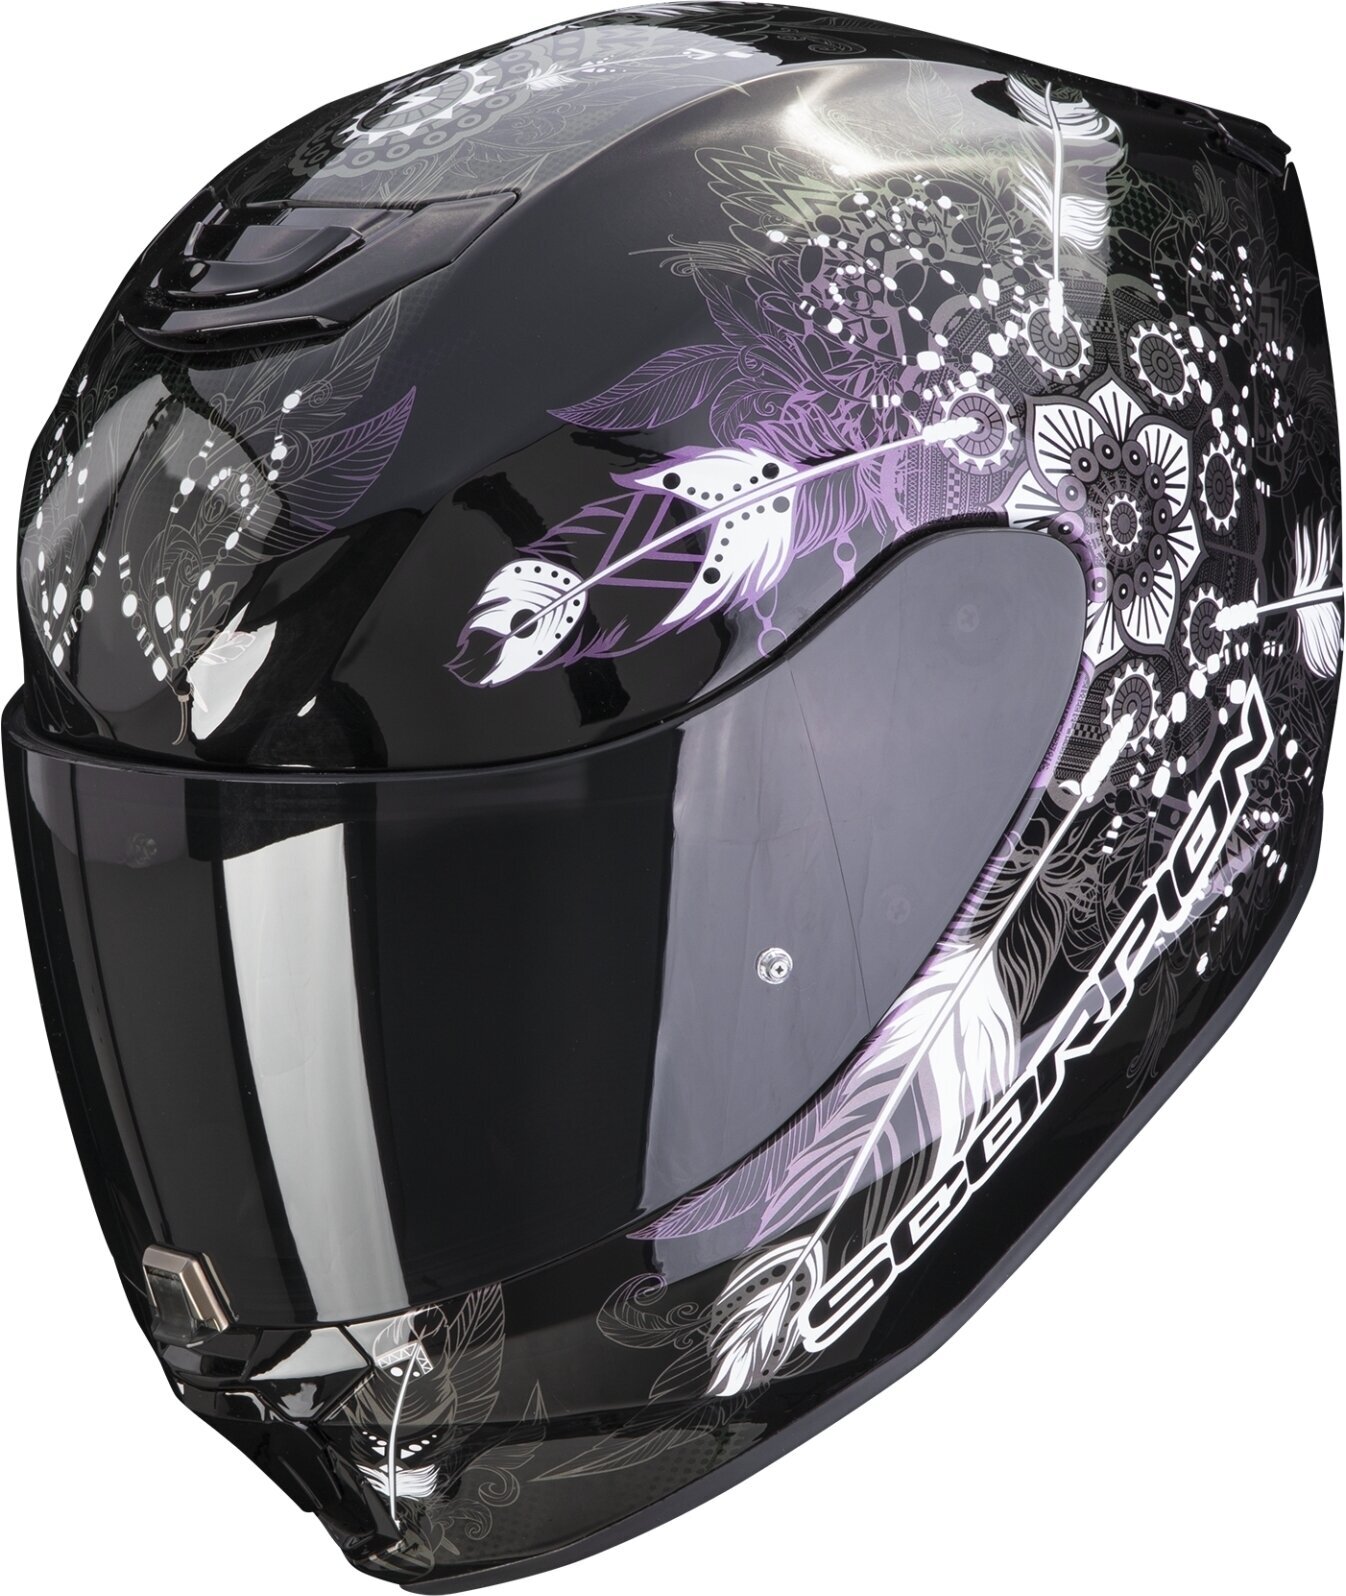 Helmet Scorpion EXO 391 DREAM Black/Chameleon S Helmet